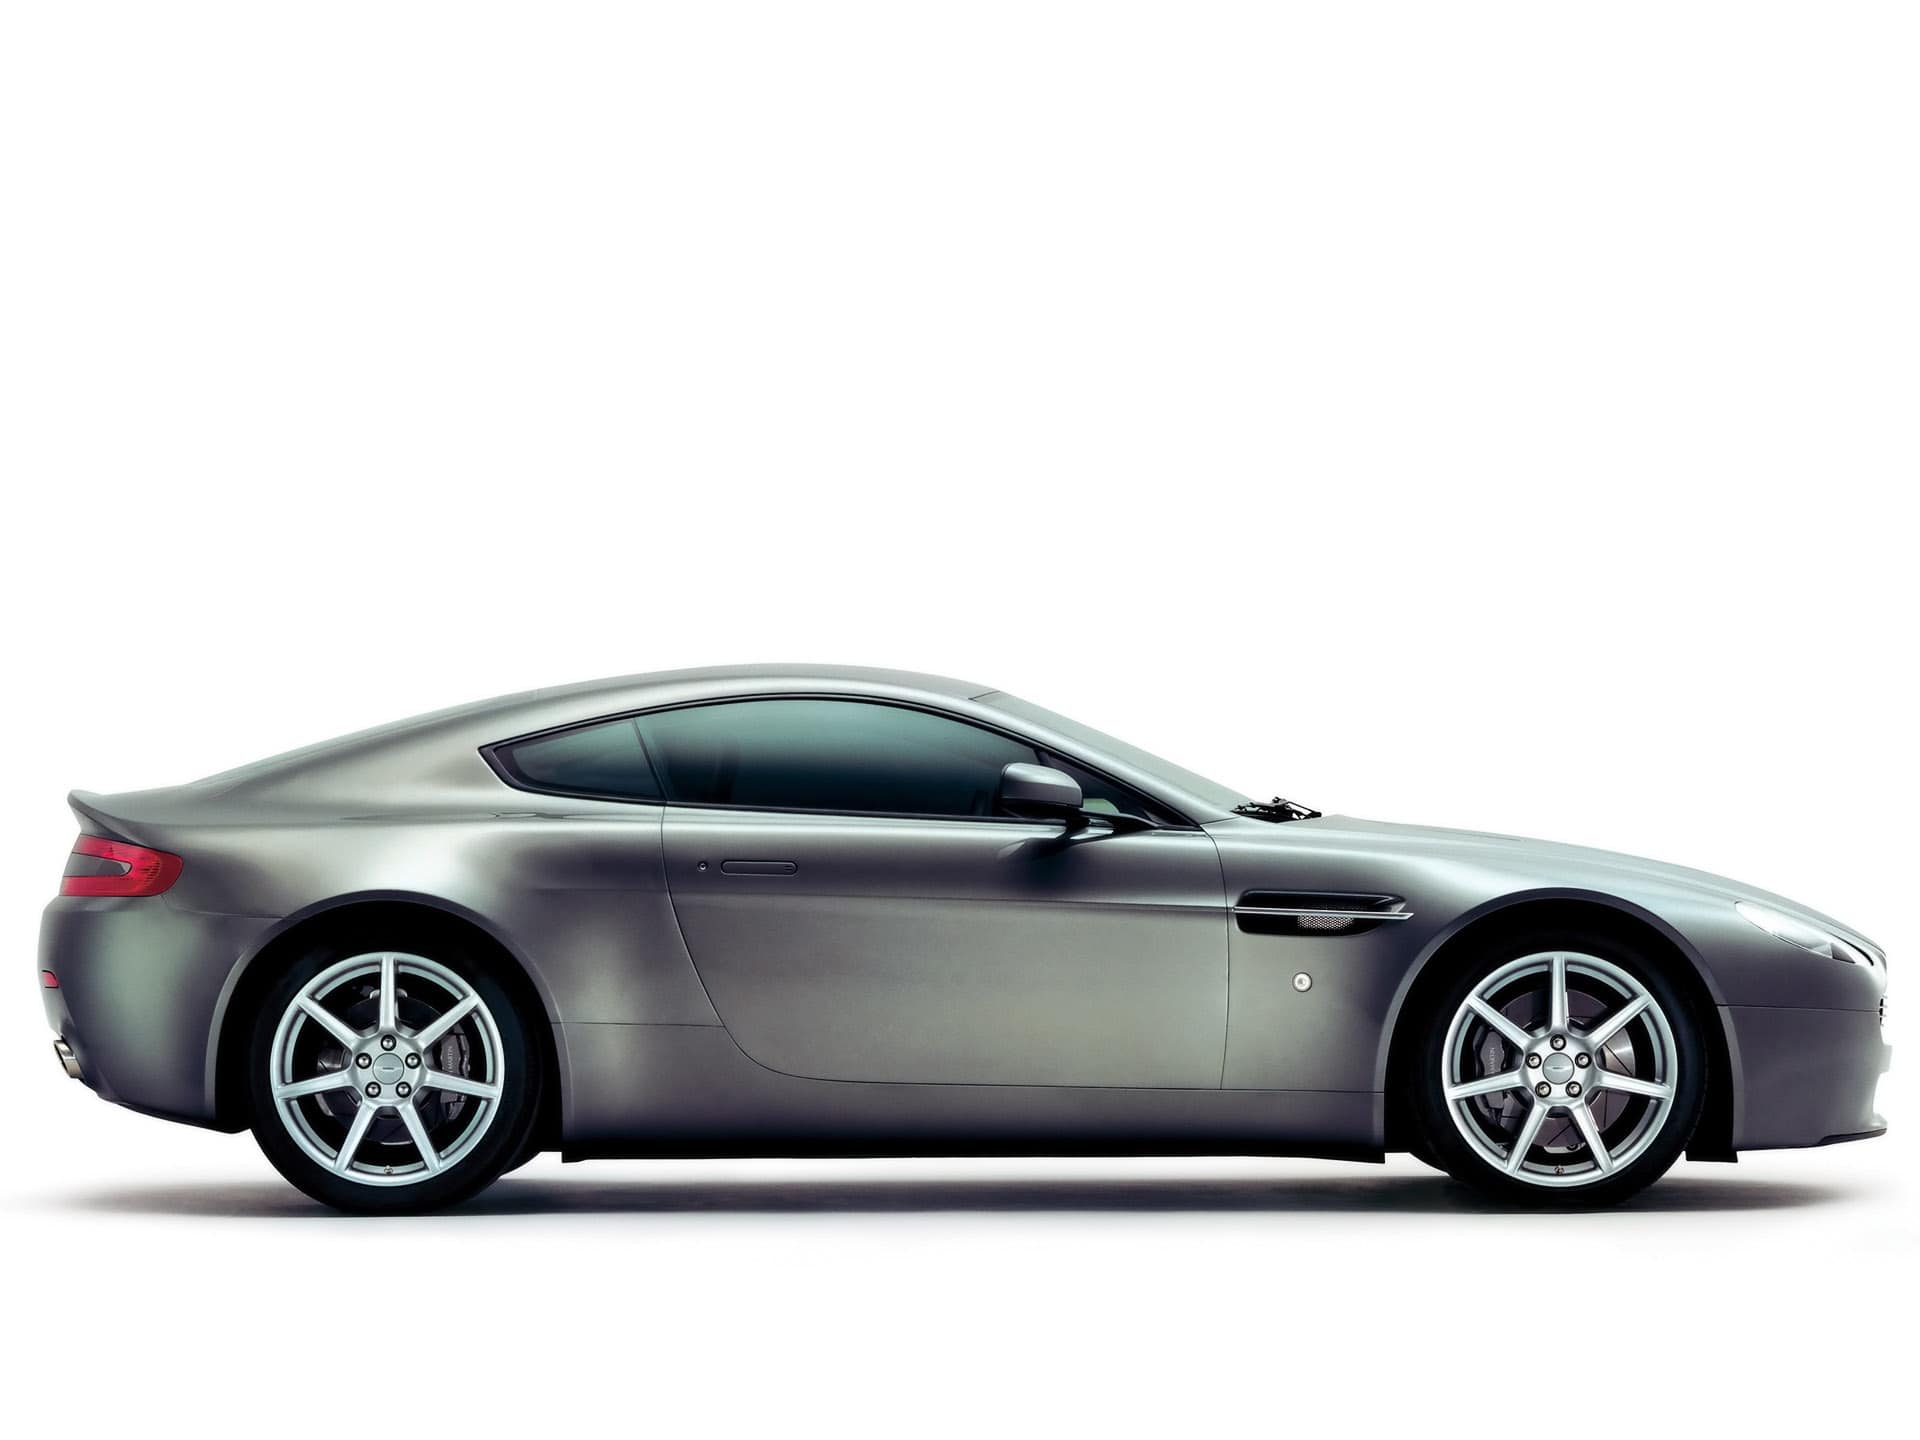 Aston Martin V8 Vantage HD Desktop Wallpaperwallpaper.net